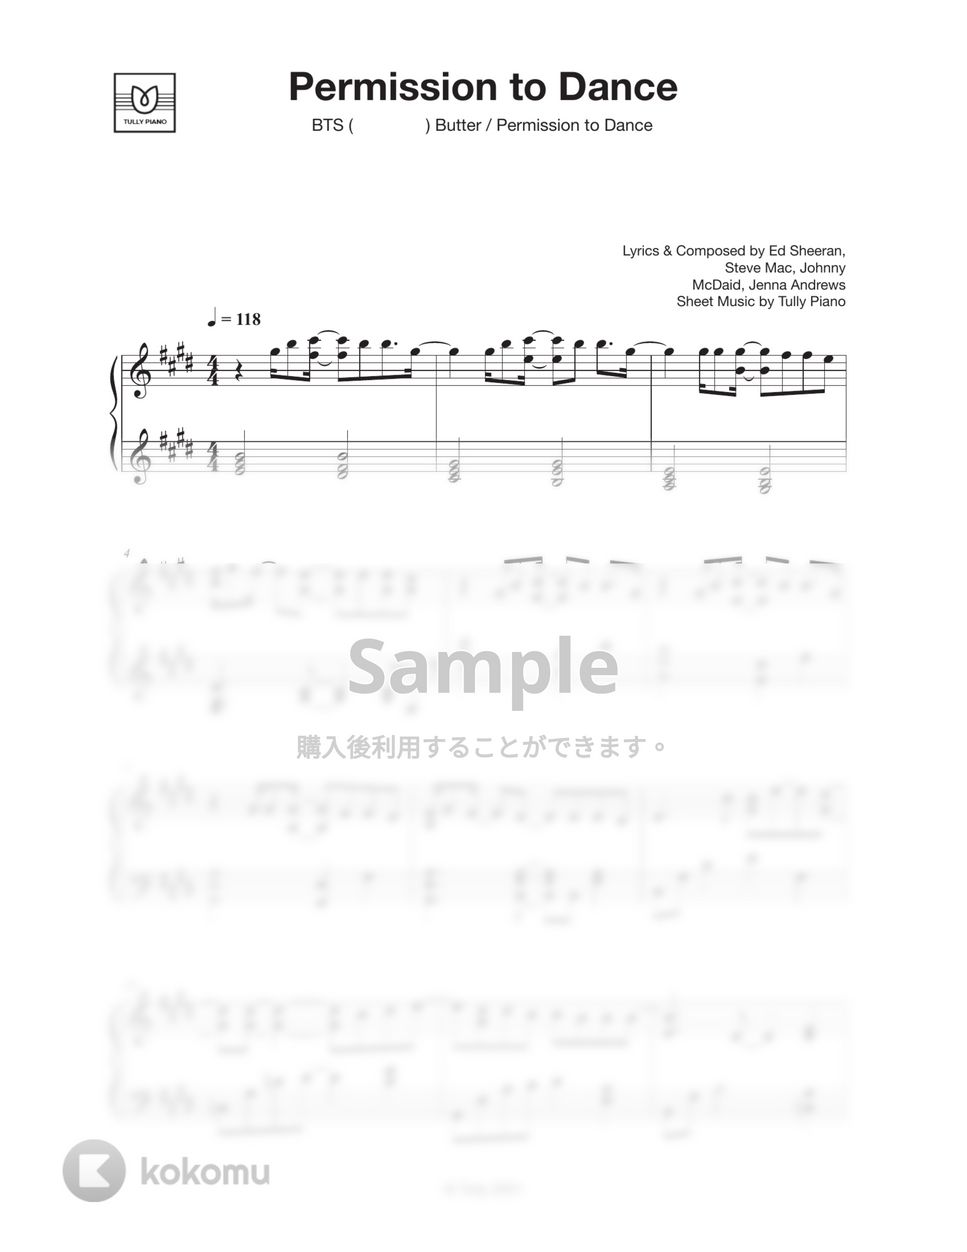 防弾少年団(BTS) - Permission to Dance (Original Key) by Tully Piano